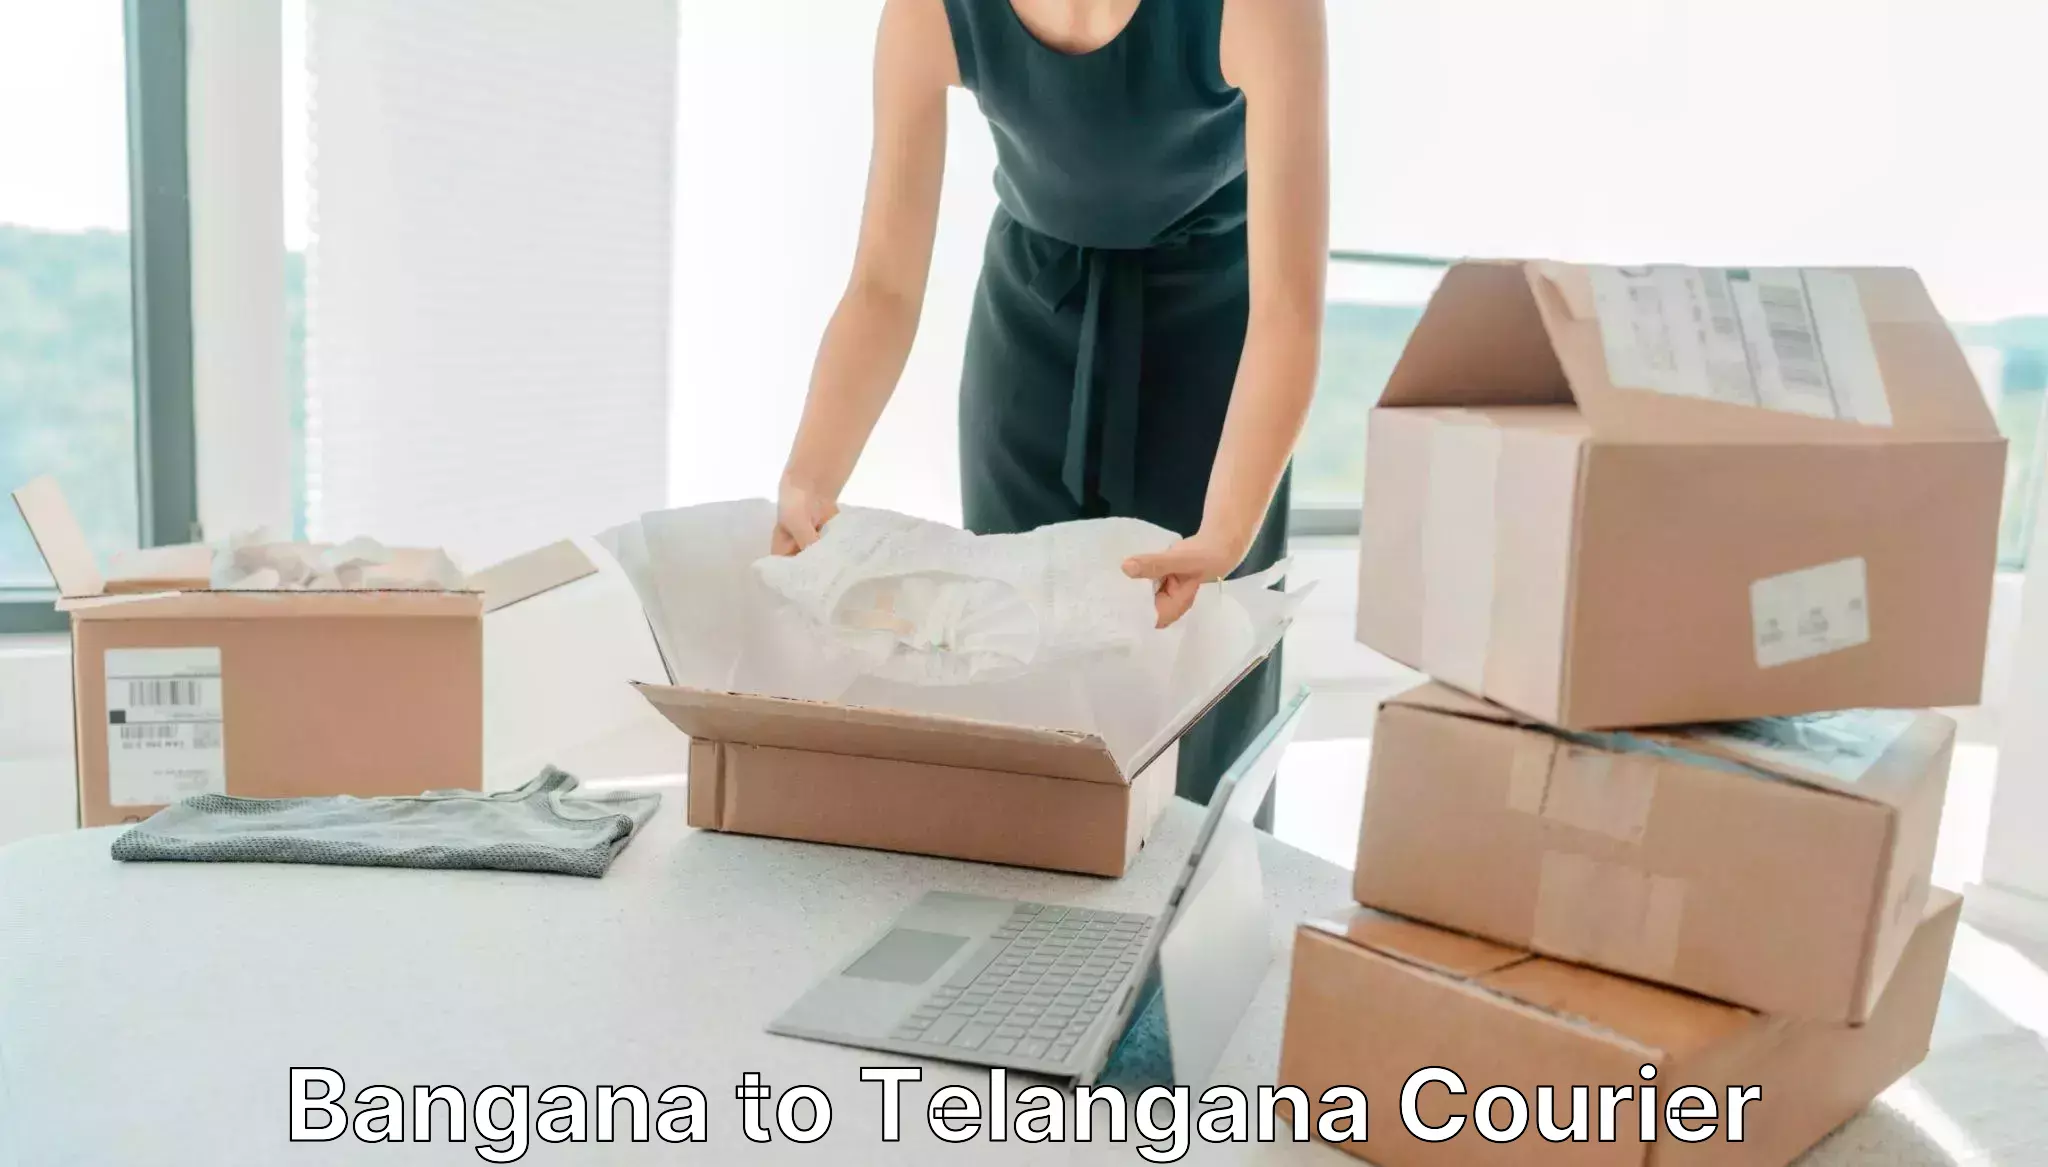 Local delivery service Bangana to Telangana